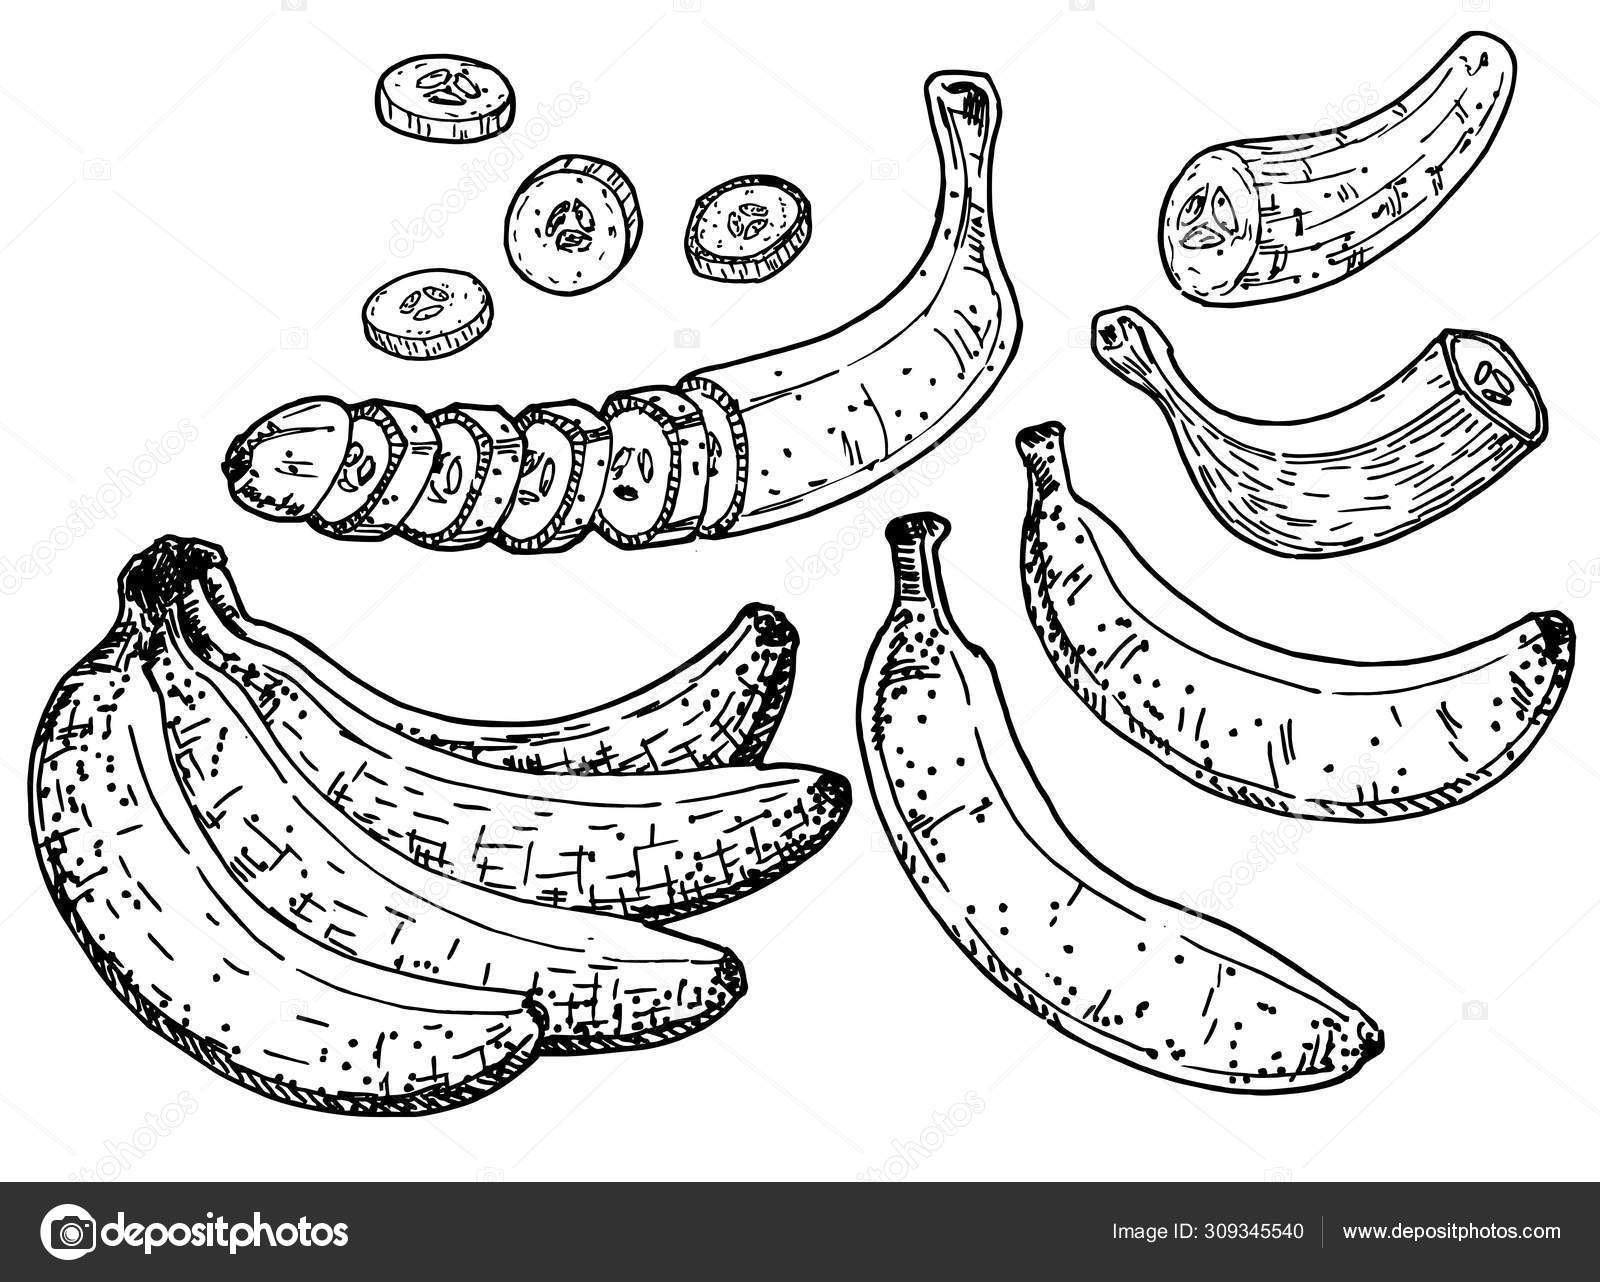 Banane Art vectoriel, icônes et graphiques à télécharger gratuitement